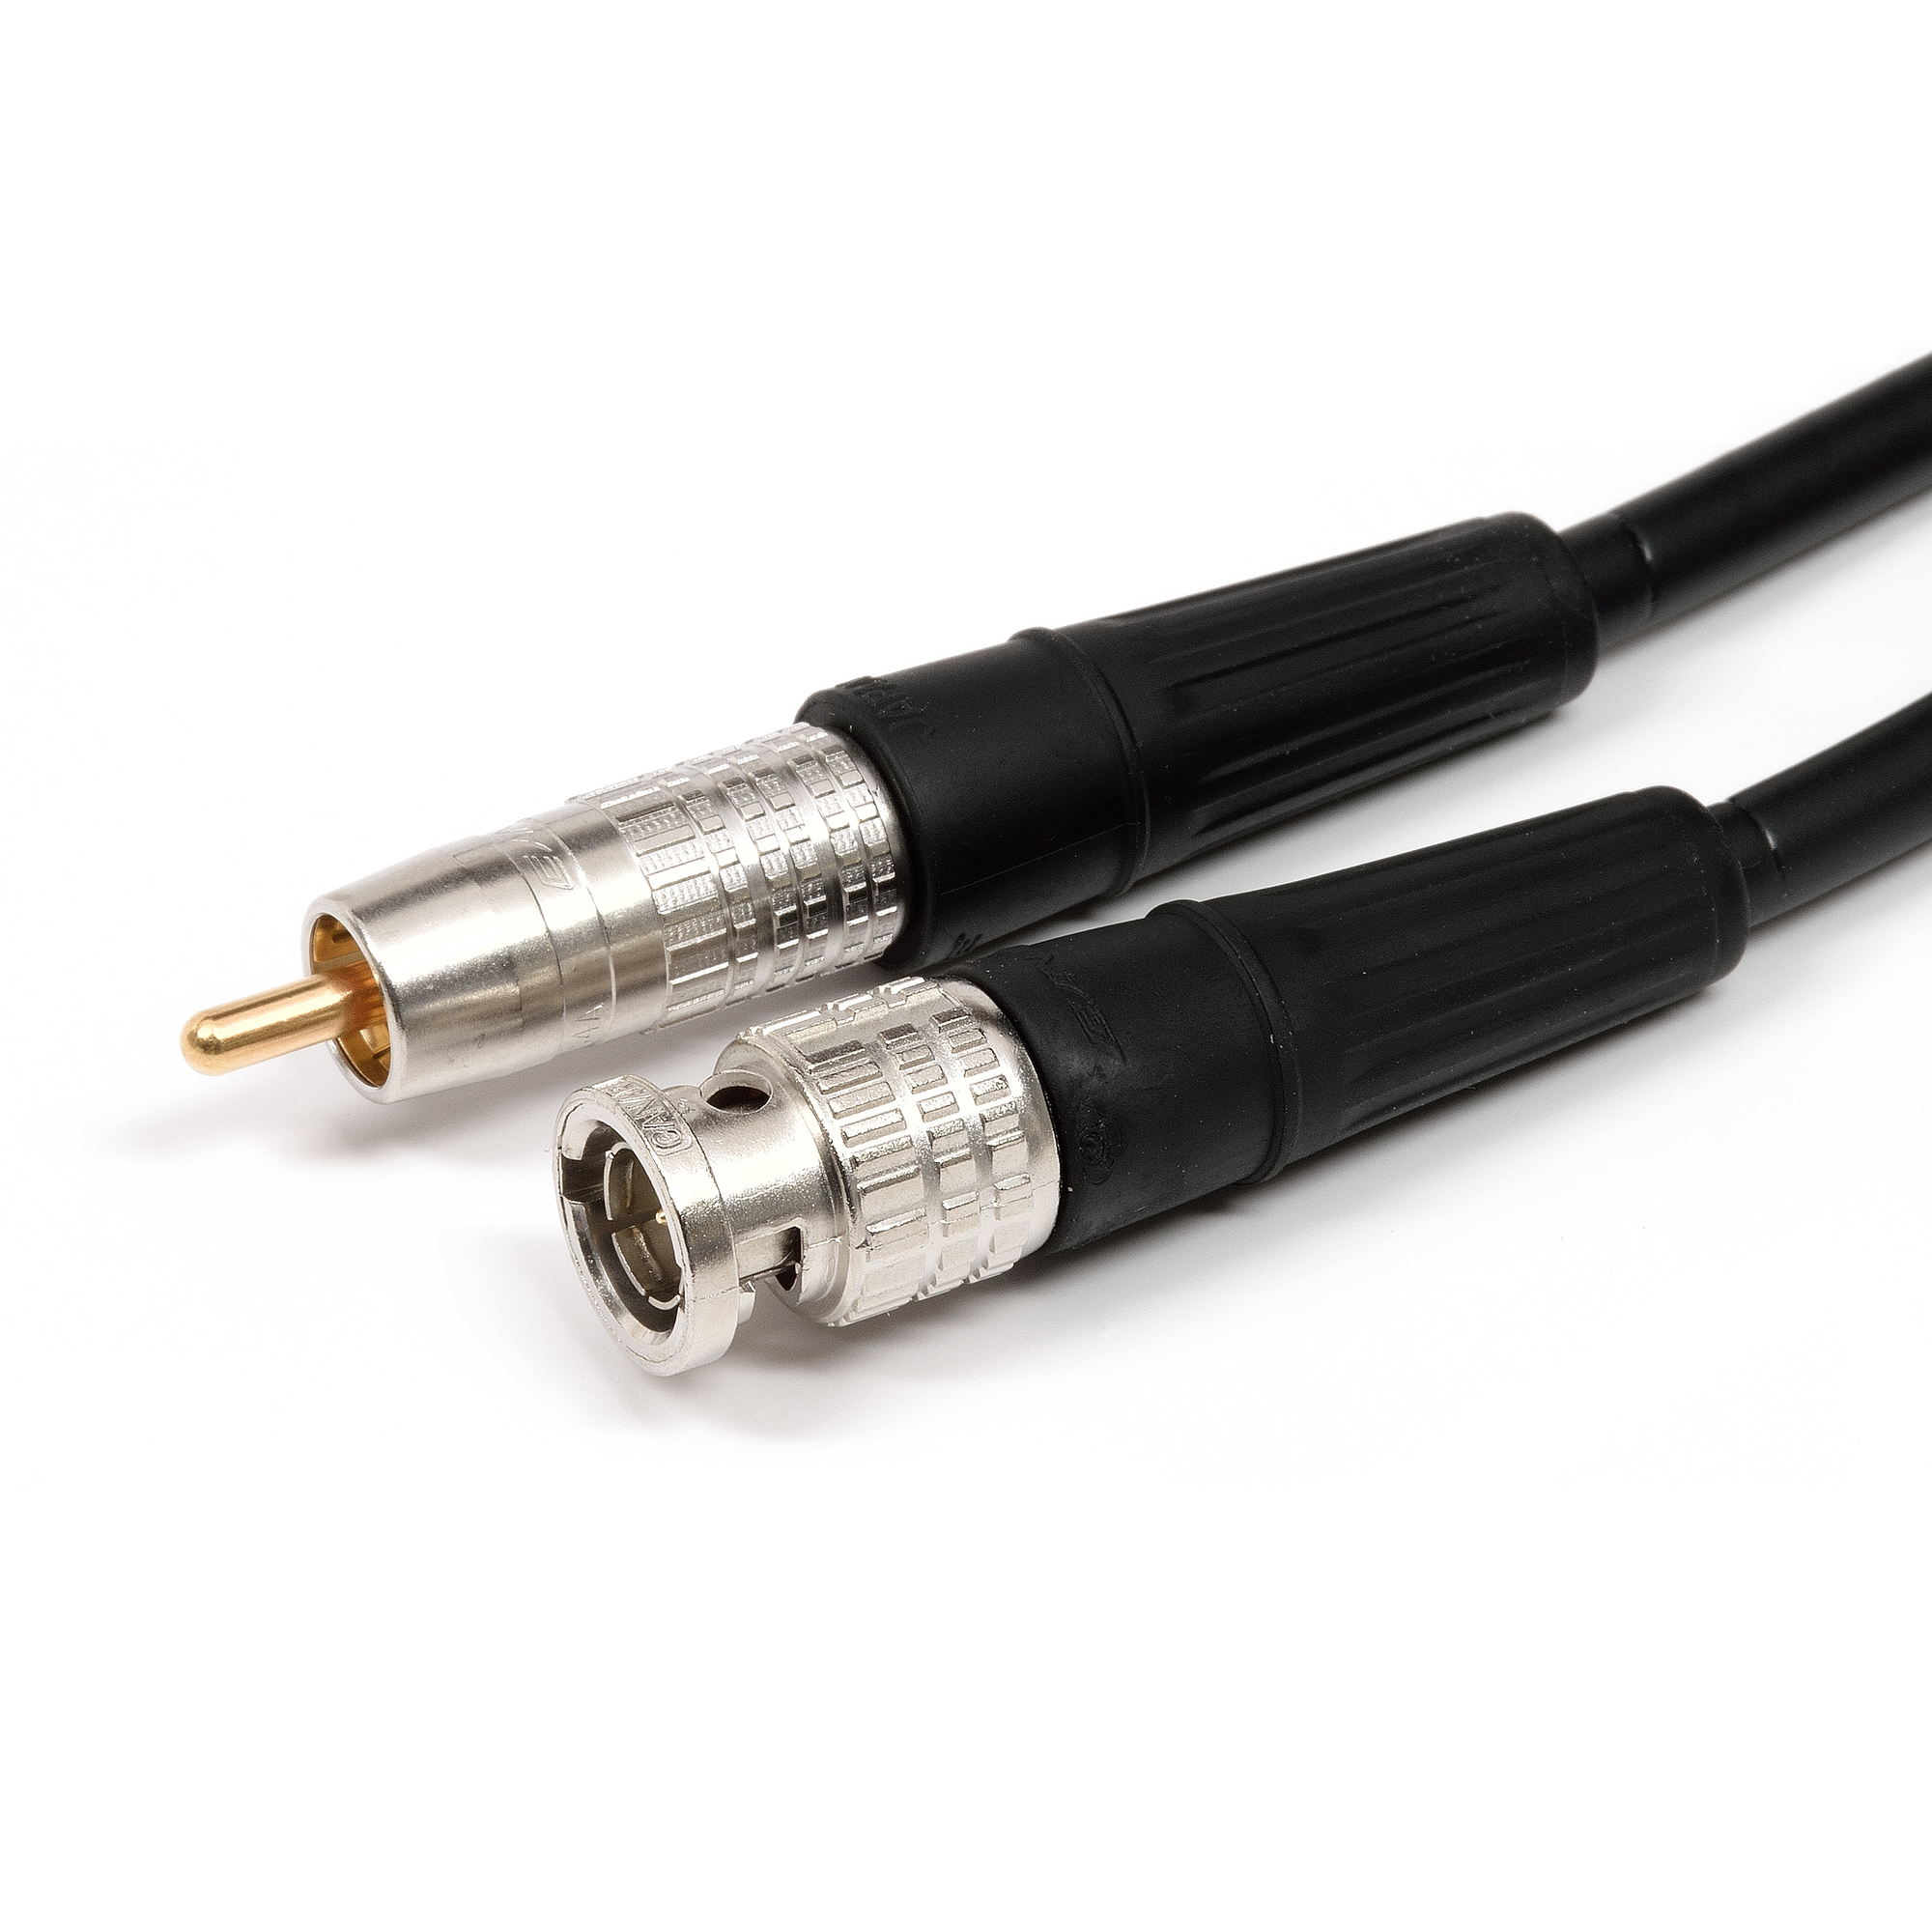 Coaxial digital cable  RCA SPDIF audio cables